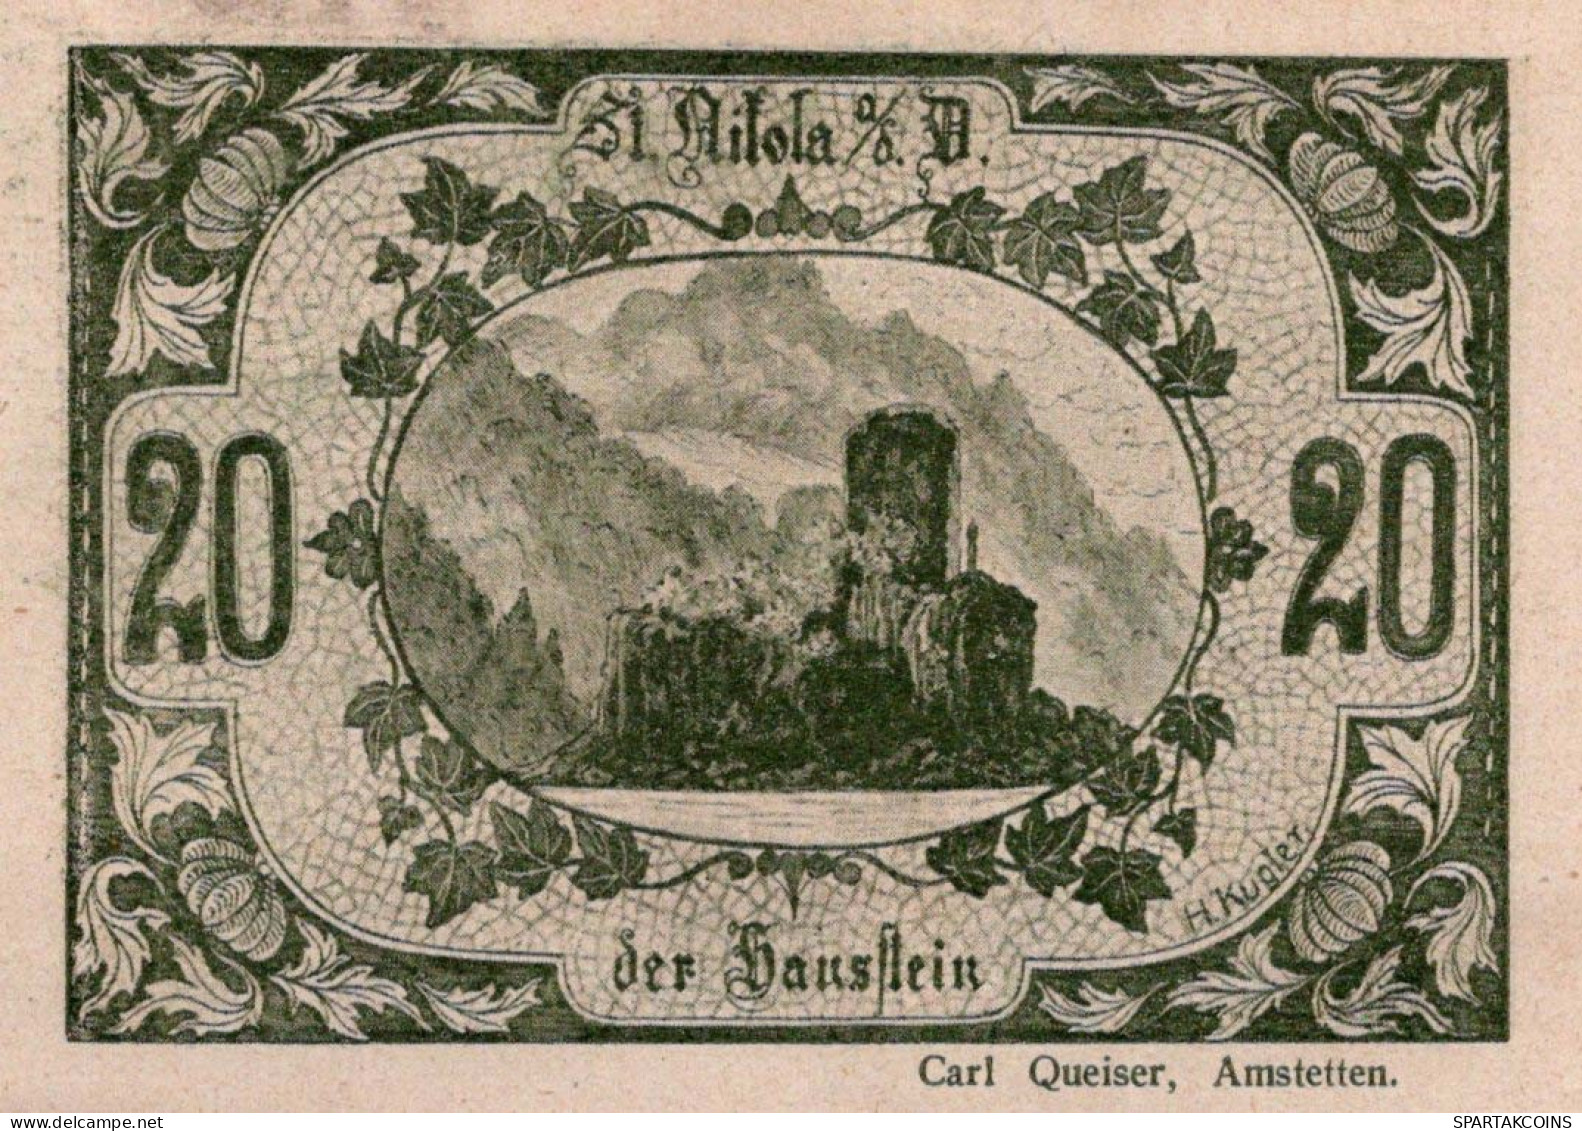 20 HELLER 1920 Stadt SANKT NIKOLA AN DER DONAU Oberösterreich Österreich Notgeld Papiergeld Banknote #PG689 - [11] Local Banknote Issues